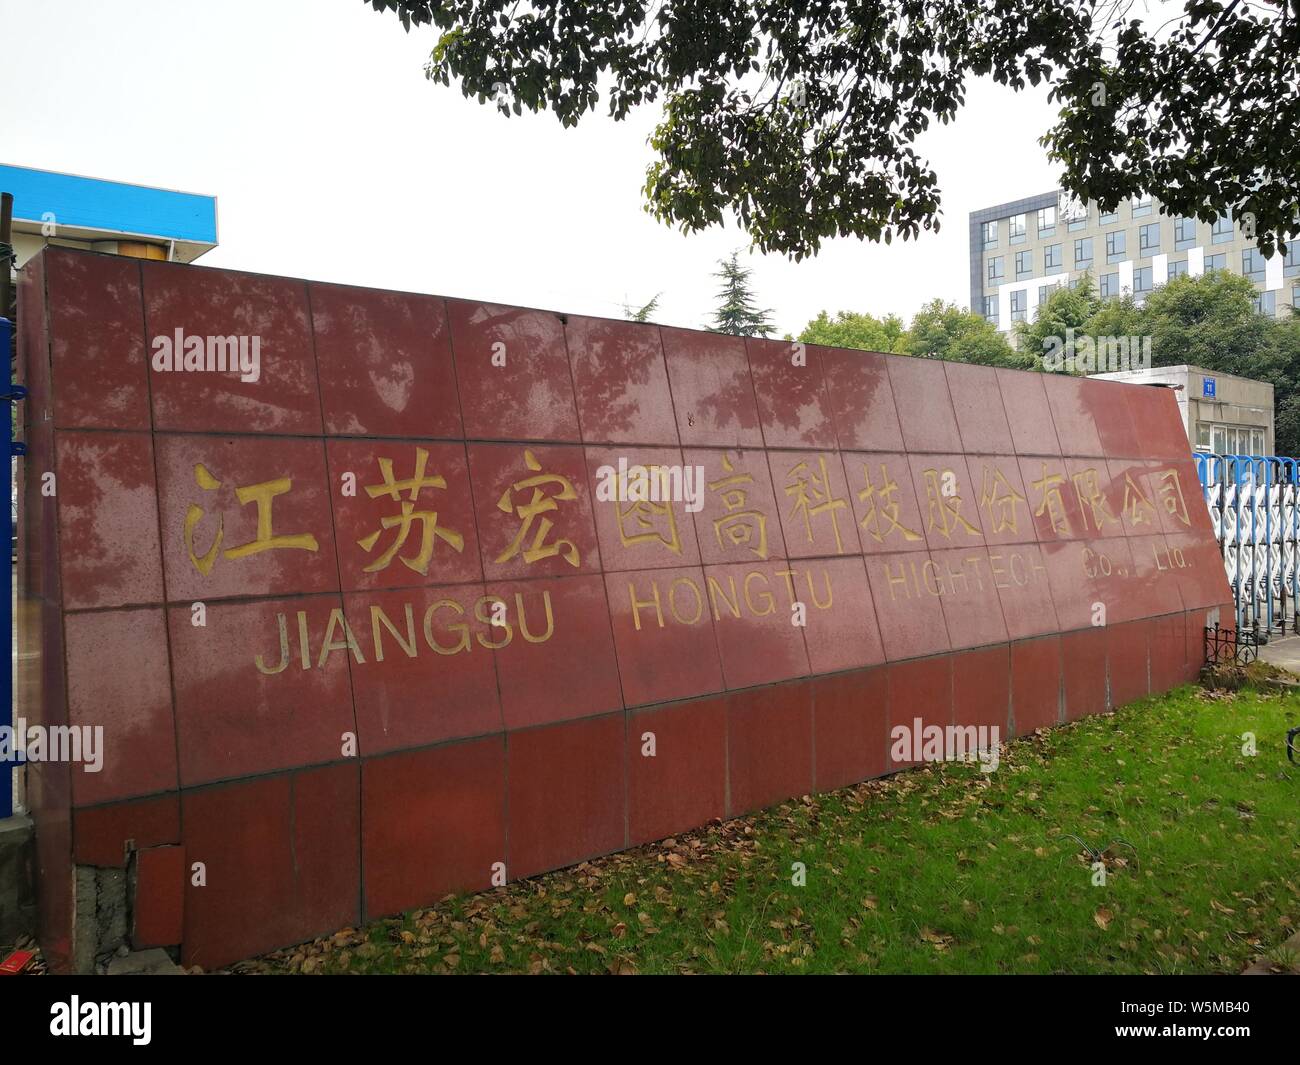 --FILE--Vue du fabricant d'électronique de haute technologie Shouguang Good Jiangsu Co.,Ltd. à Nanjing city, Jiangsu province de Chine orientale, 2 janvier 2019. Banque D'Images